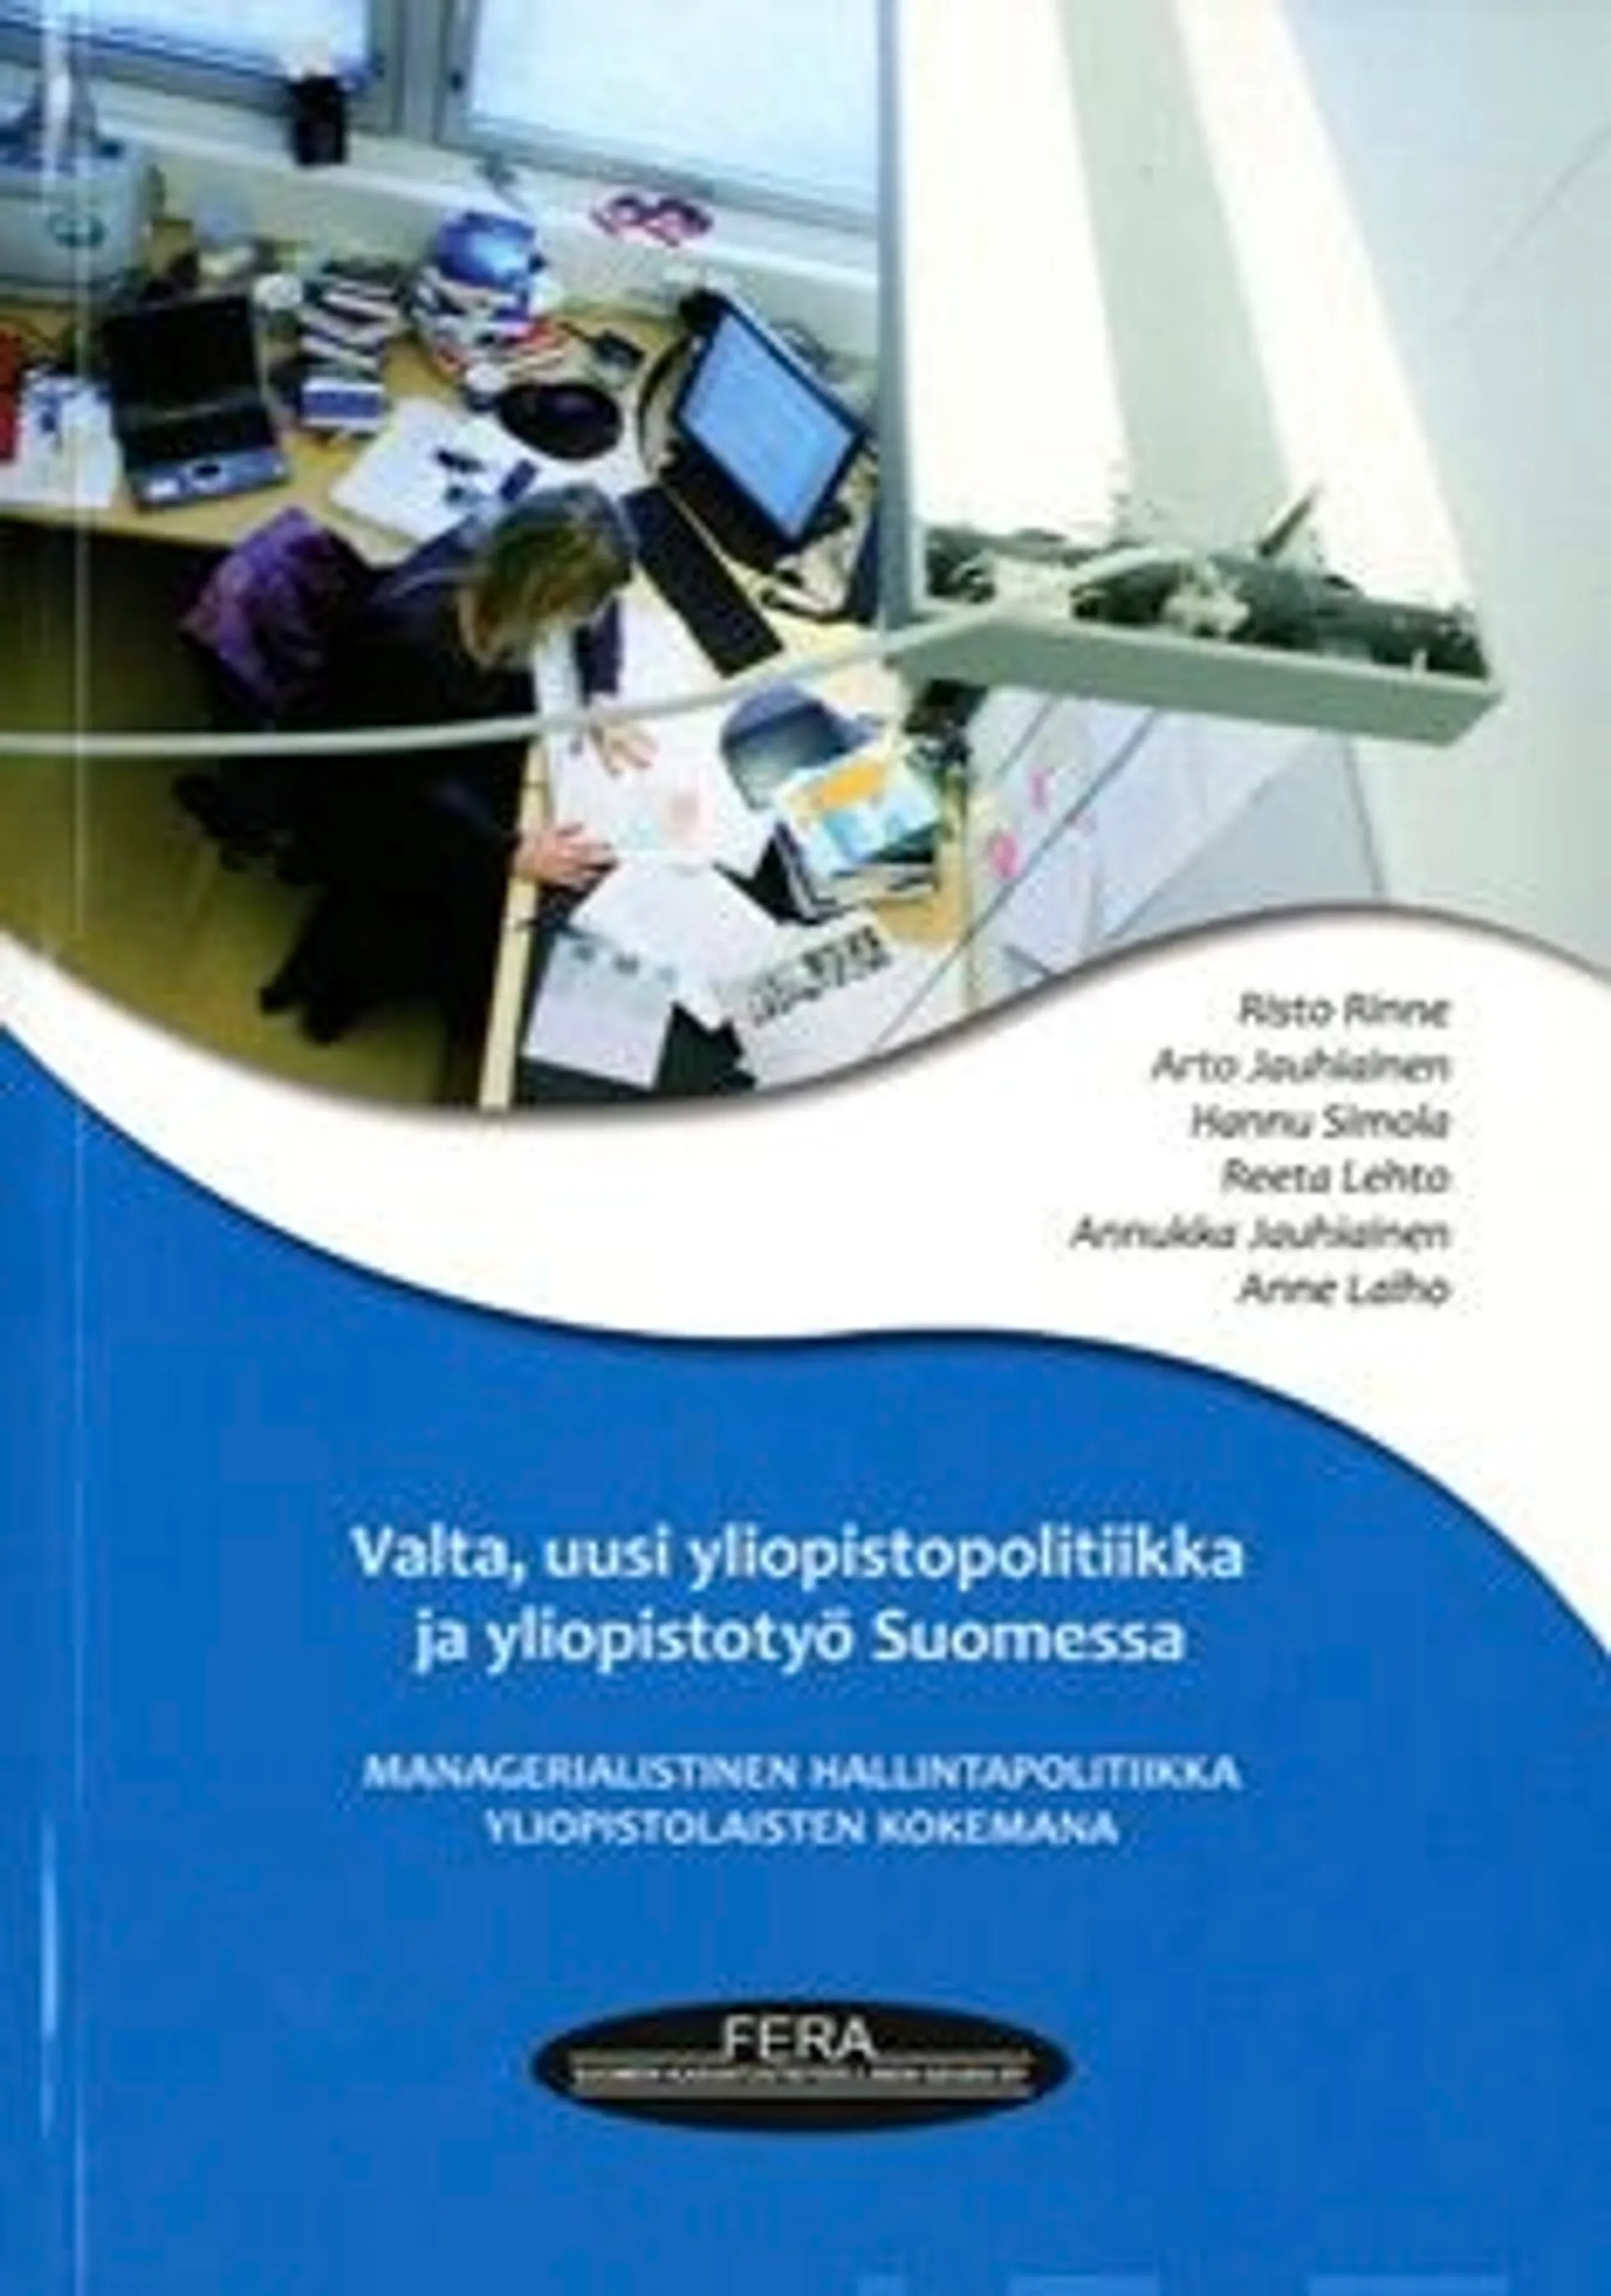 Rinne, Valta, uusi yliopistopolitiikka ja yliopistyö Suomessa